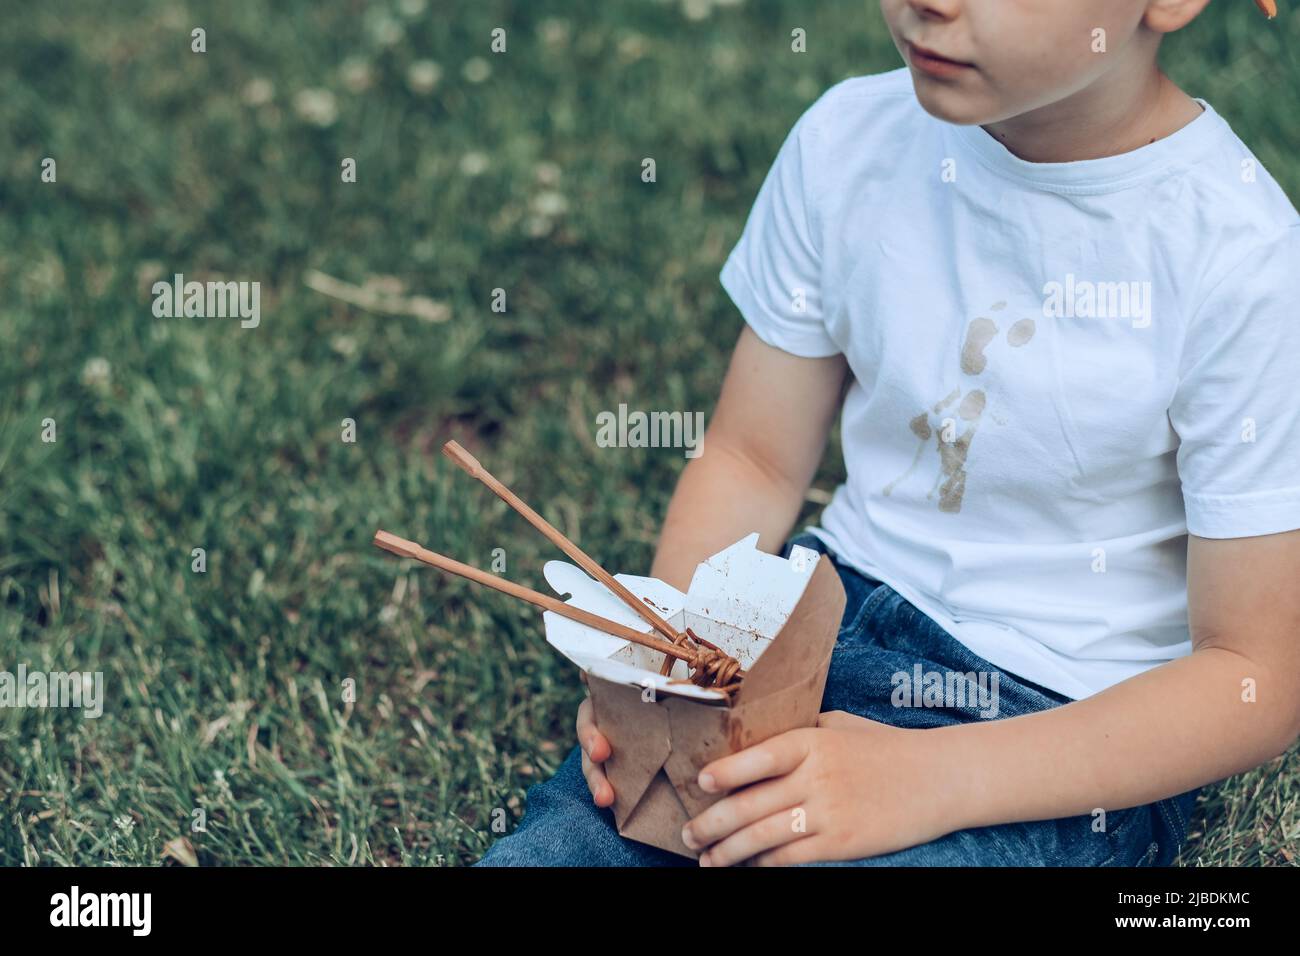 Il ragazzo che tiene il cibo da asporto seduto sull'erba. La salsa sporca si macchia su una maglietta bianca. All'aperto Foto Stock